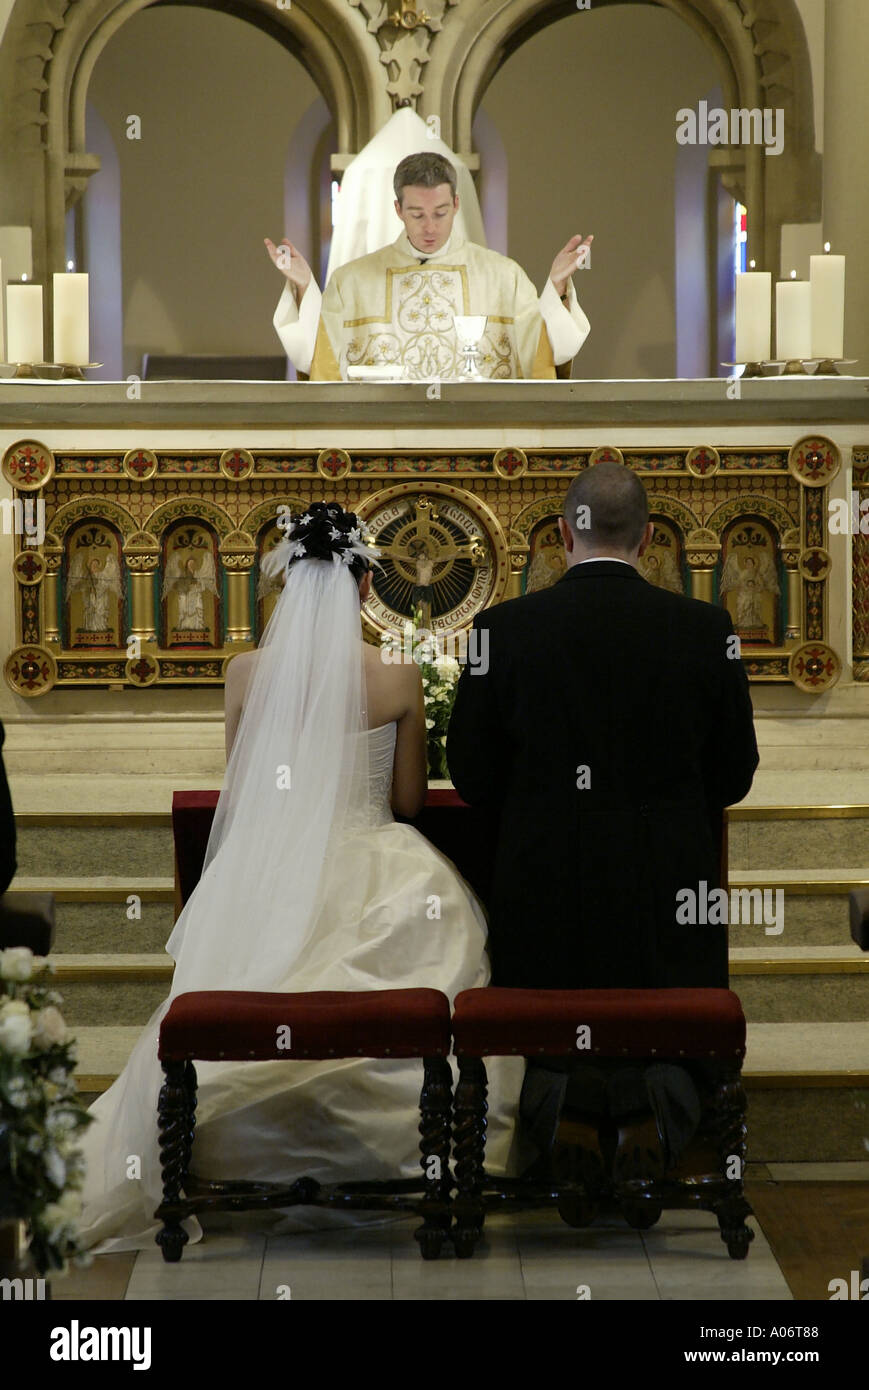 Bride and groom taking prayers during uk Catholic wedding ceremony Stock Photo